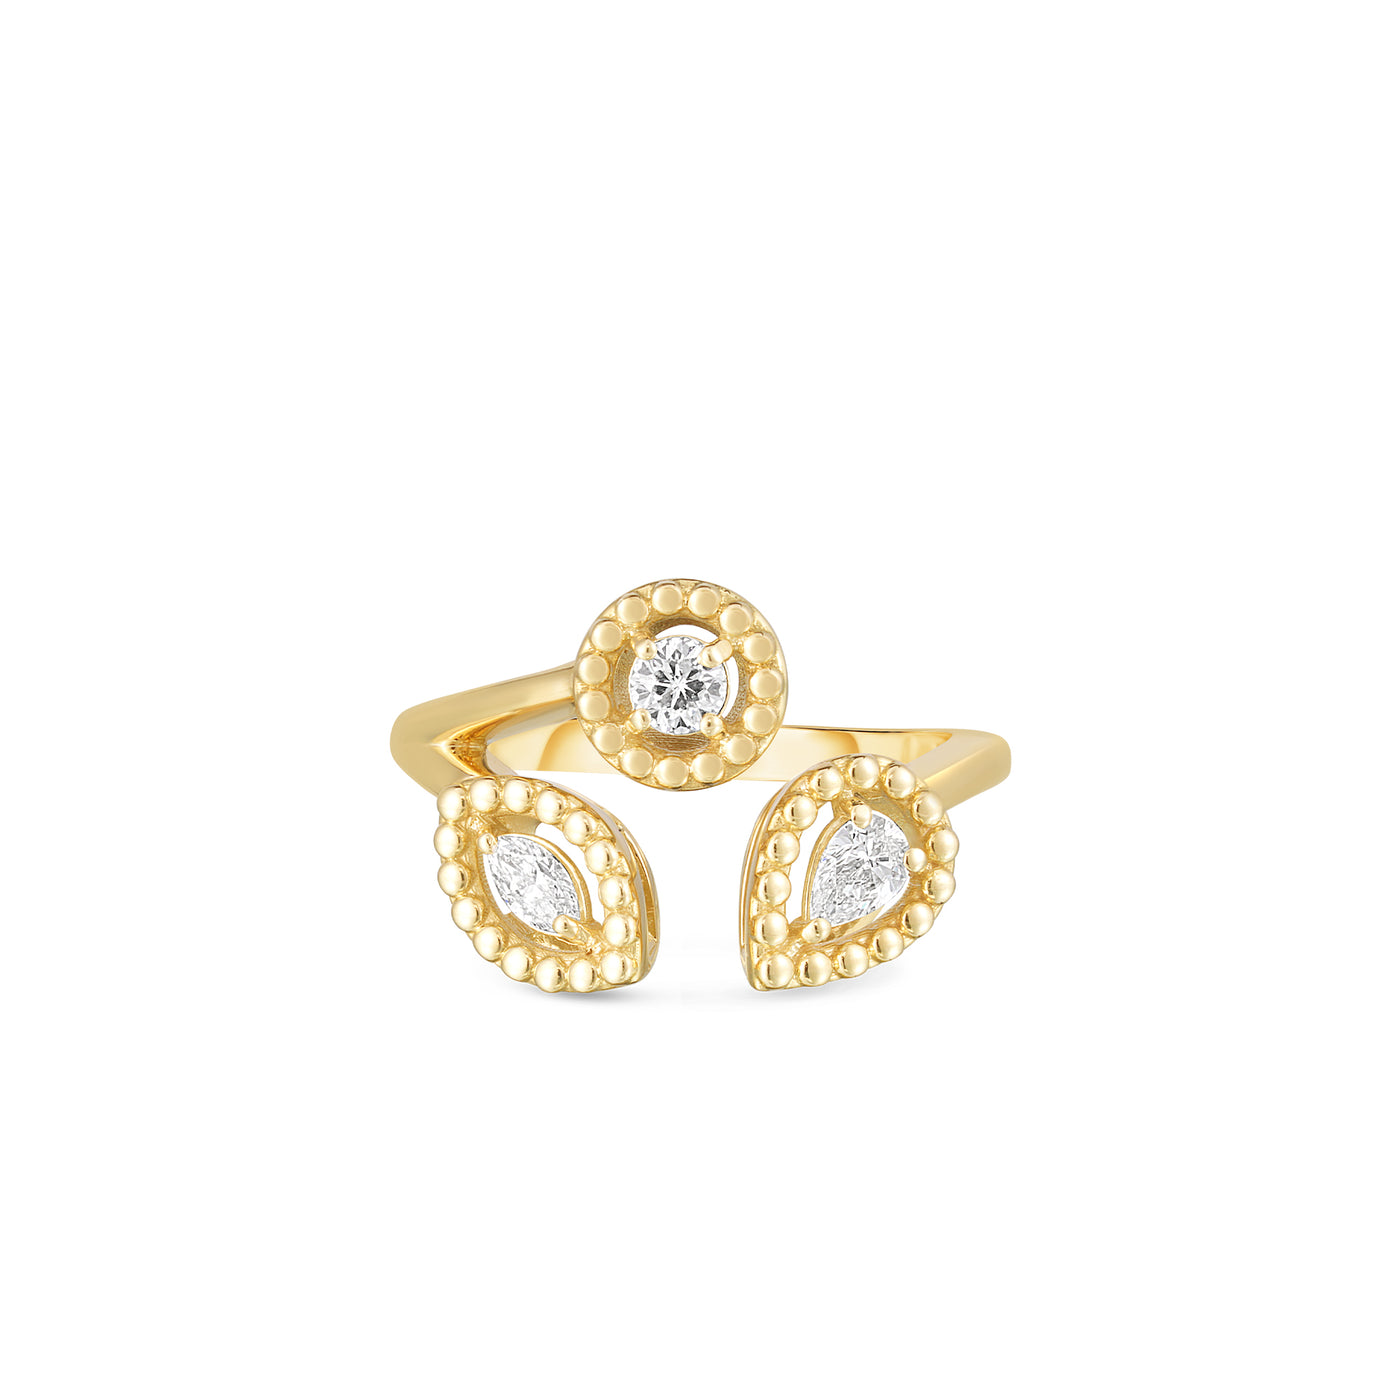 Roberto Coin 18k Yellow Gold 3 Stone Diamond Fashion Ring – 111491AX65X0